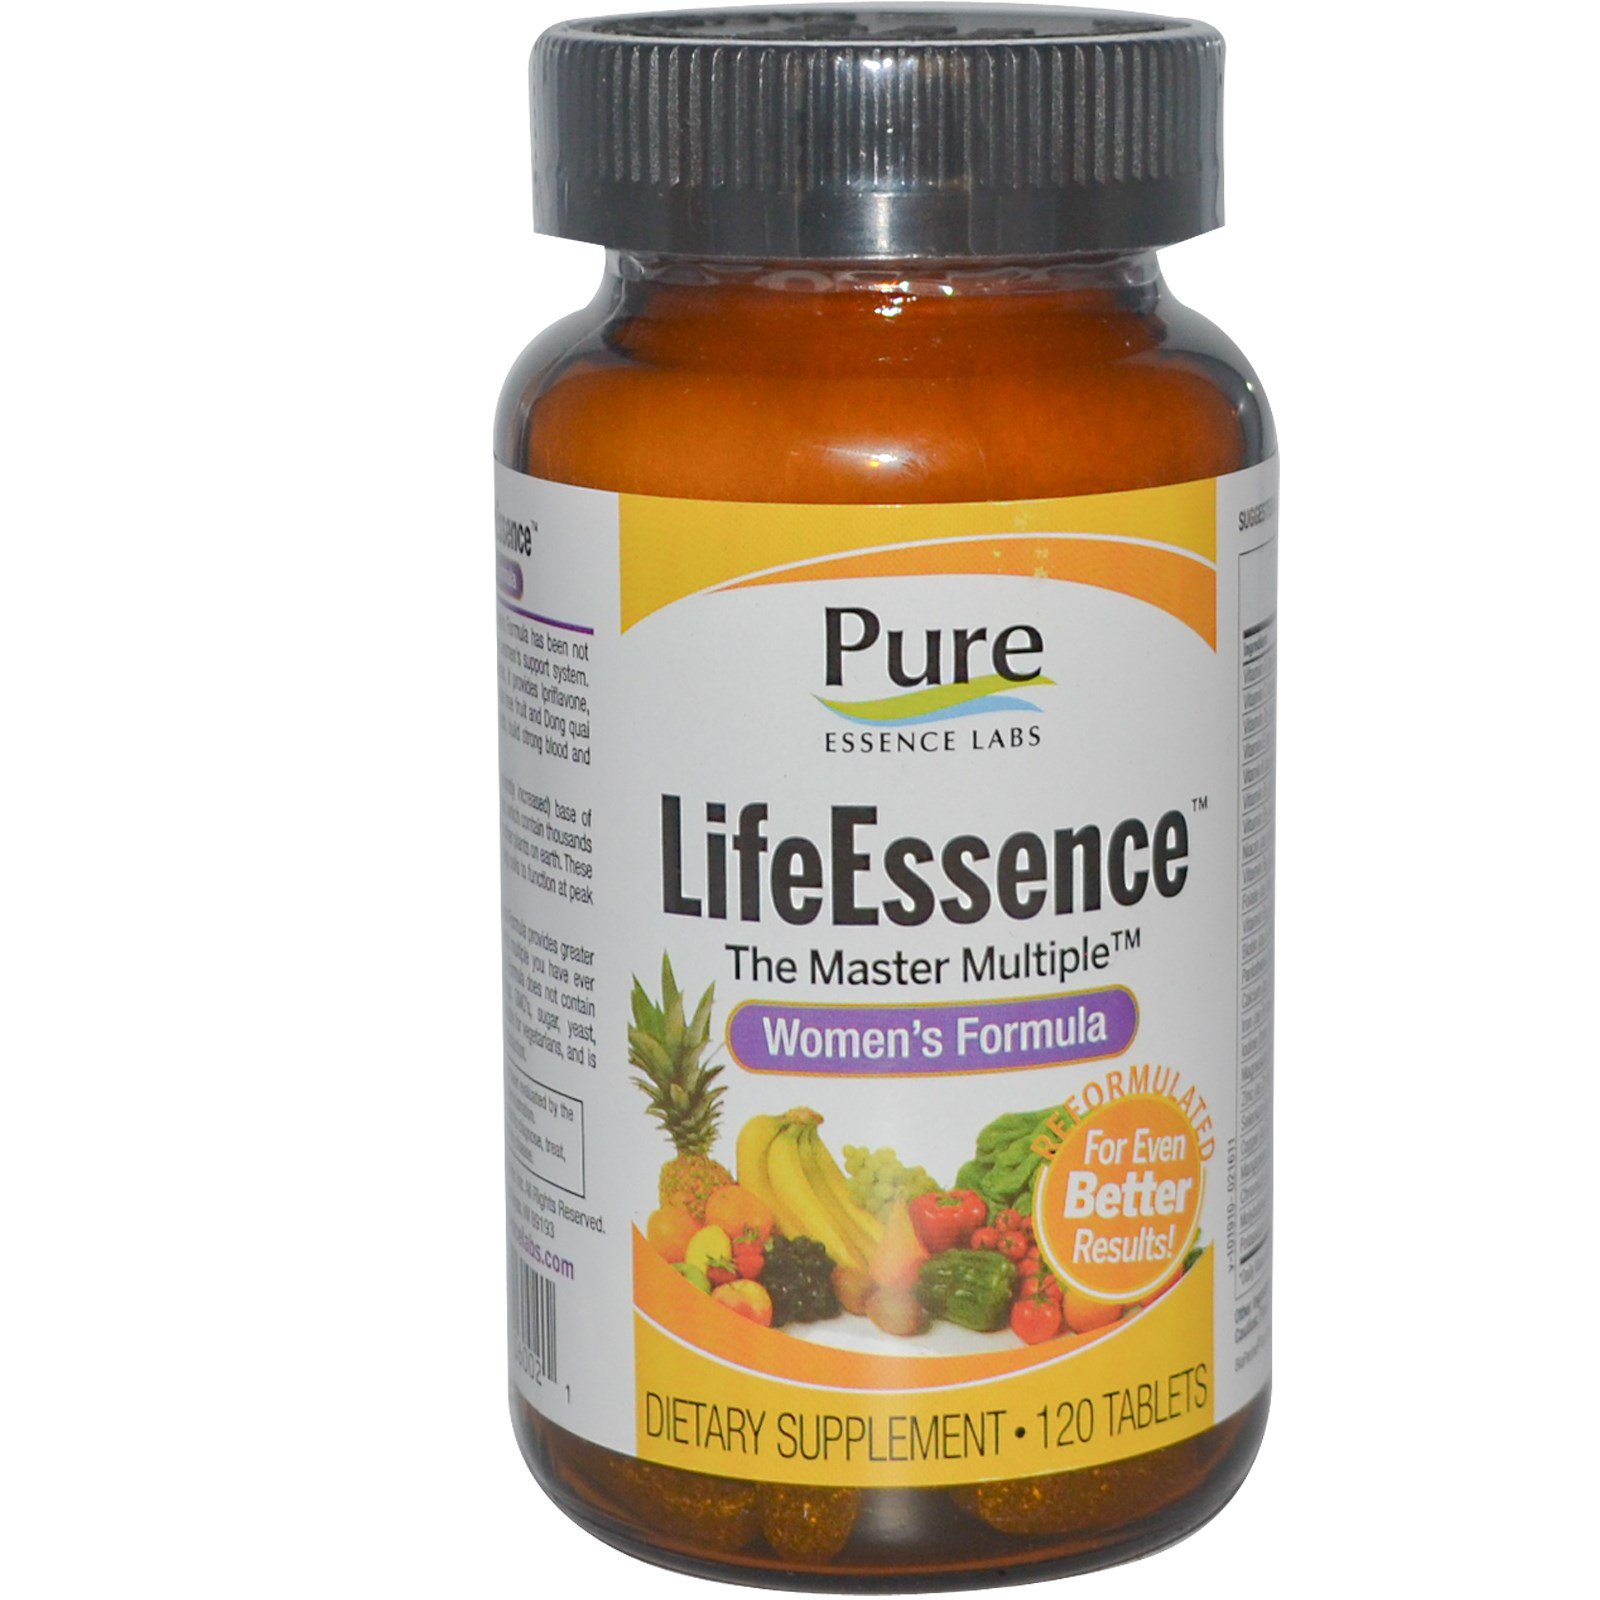 Pure Essence, LifeEssence, The Master Multiple, формула для женщин, 120 таблеток